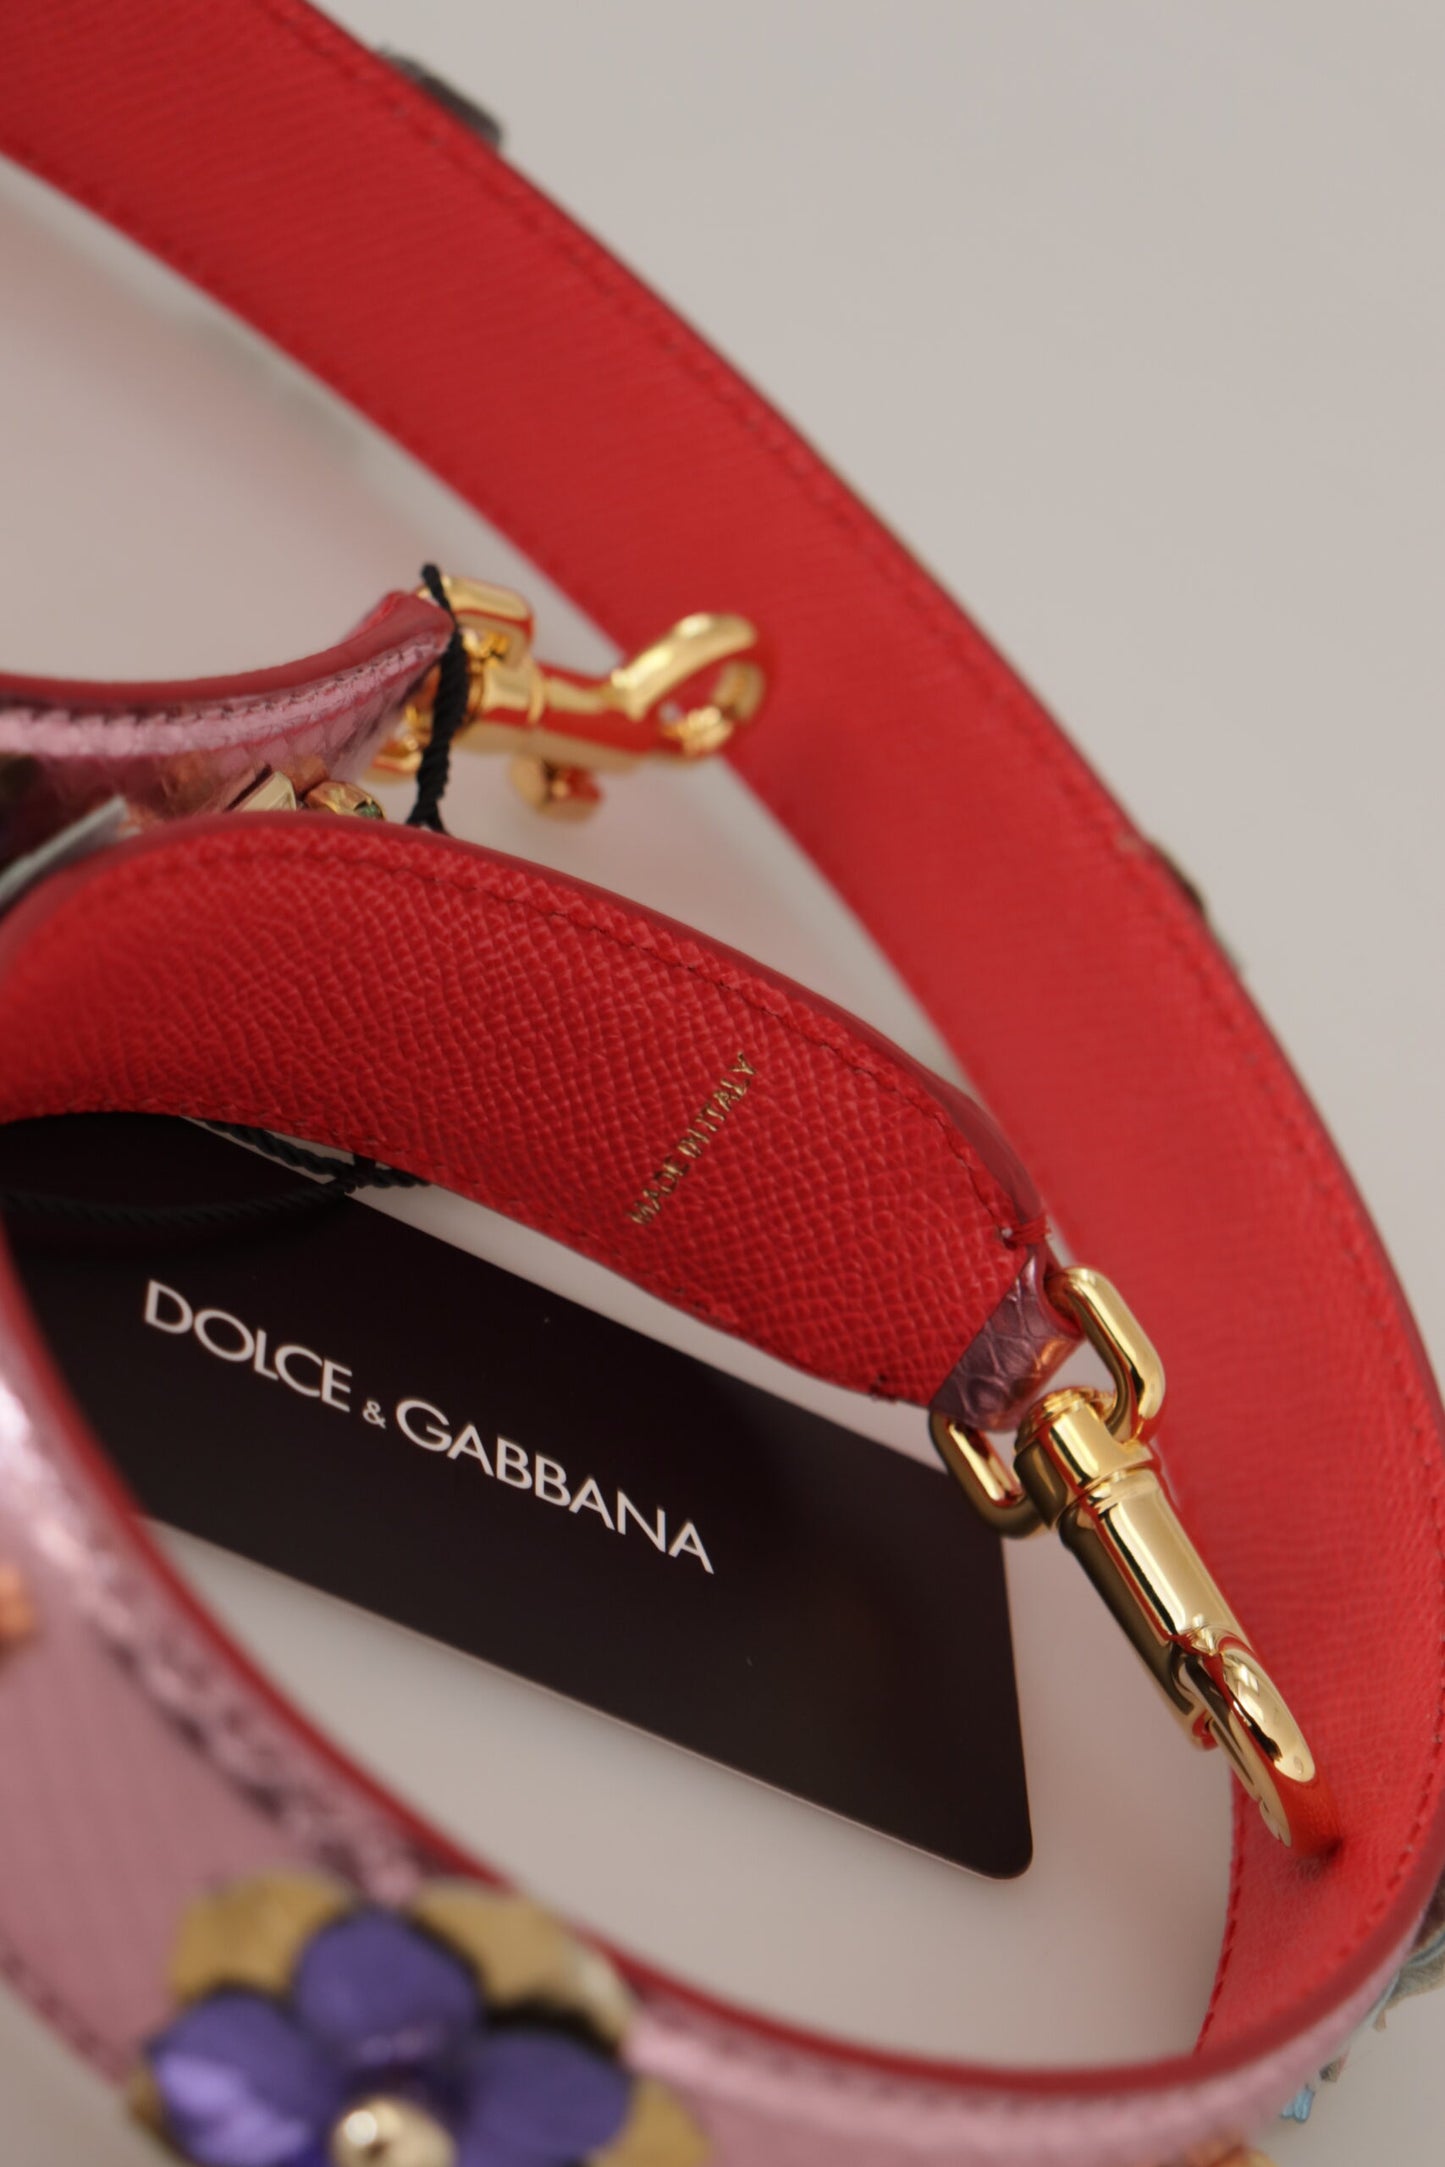 Dolce & Gabbana Metallic Pink Leder mit Schultergurt besetzt